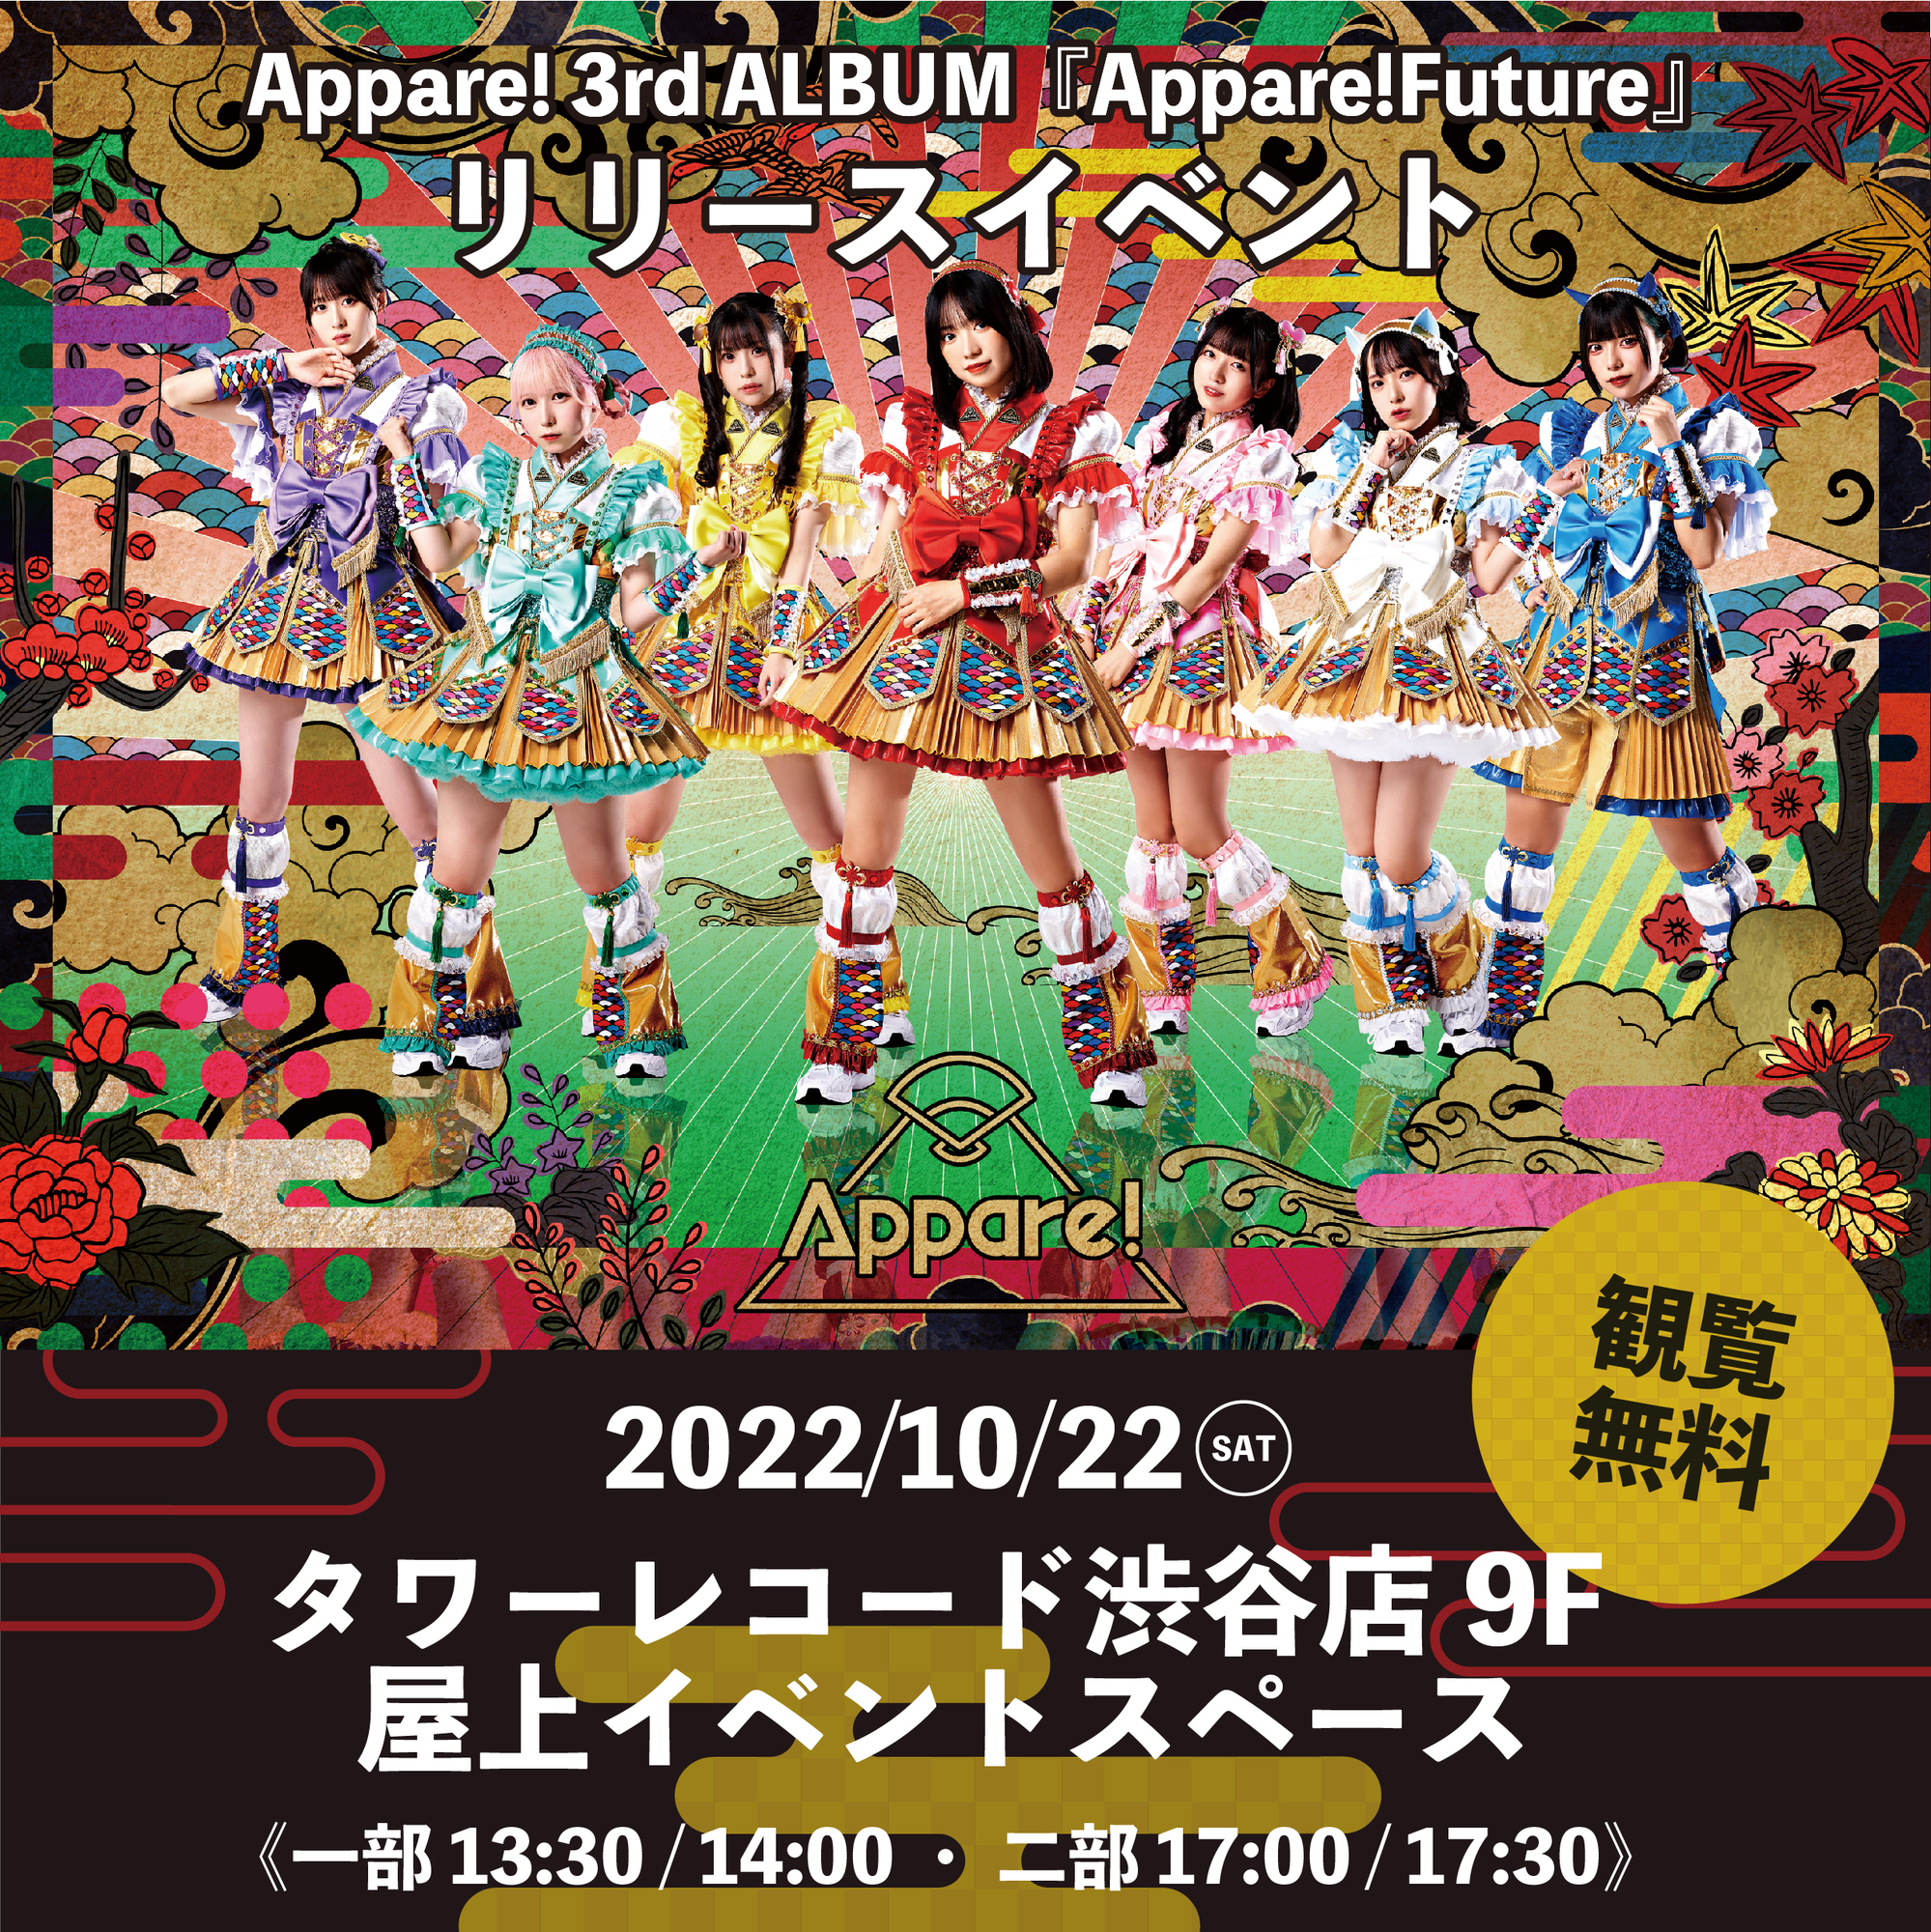 3rd ALBUM リリースイベント情報】2022/10/22(土)@タワーレコード渋谷 